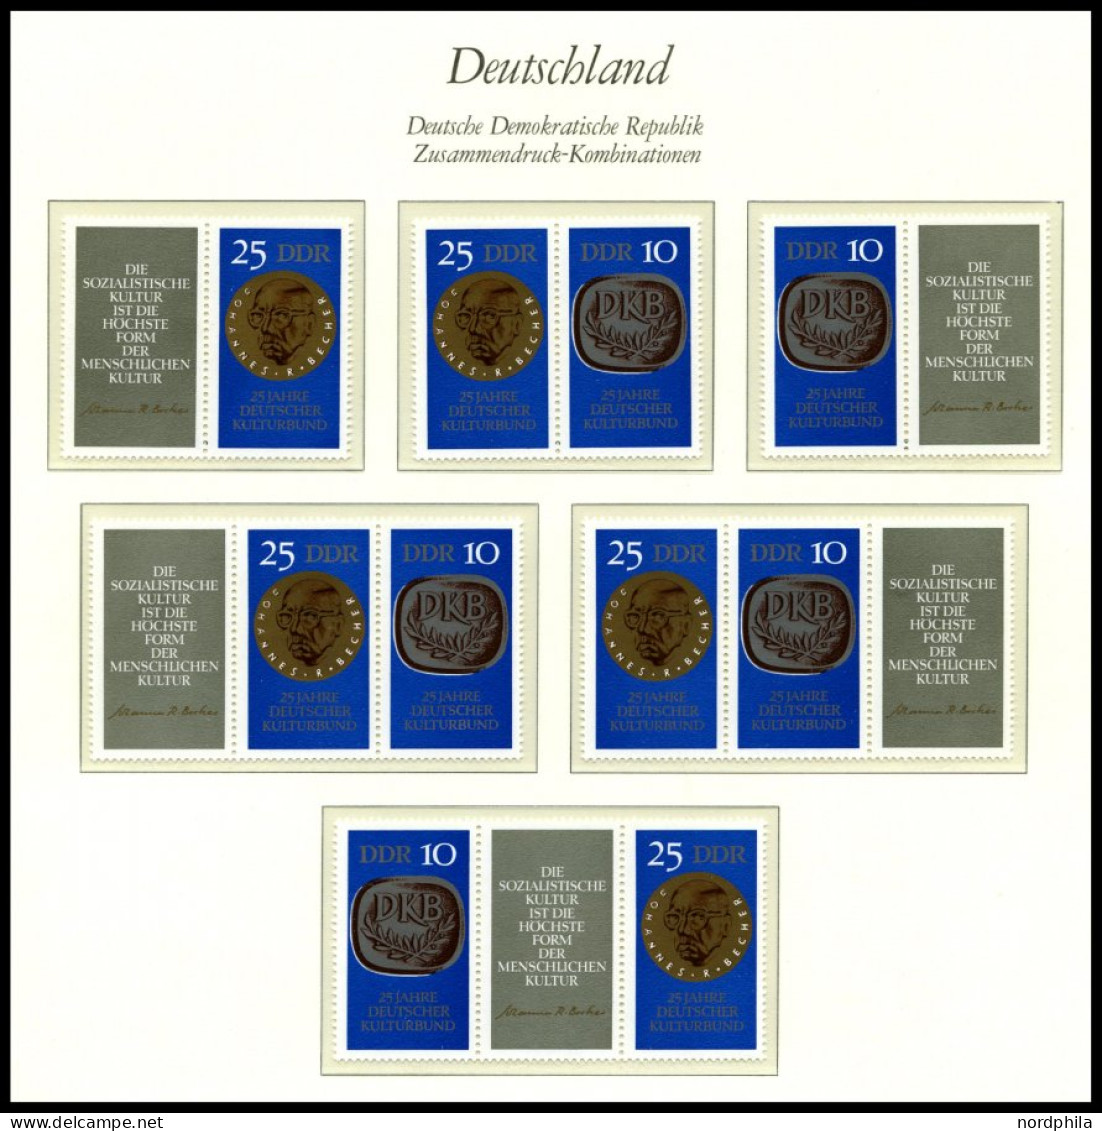 ZUSAMMENDRUCKE , postfrische Sammlung Zusammendrucke DDR von 1959-90 in 3 Borek Falzlosalben mit guten mittleren Ausgabe